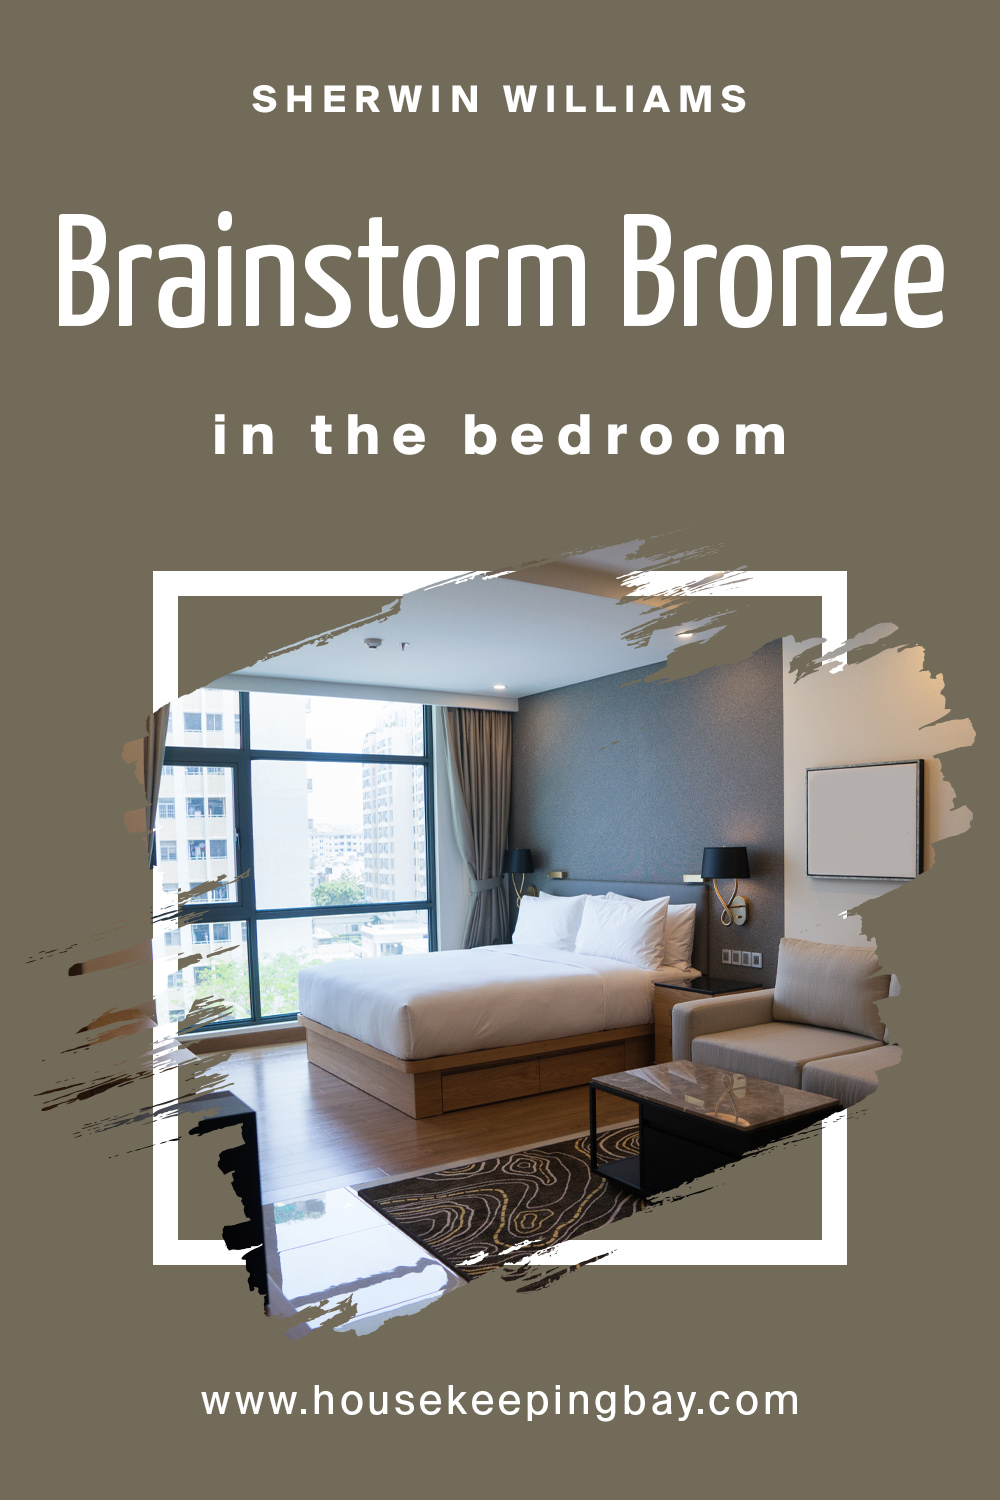 Brainstorm Bronze For the bedroom